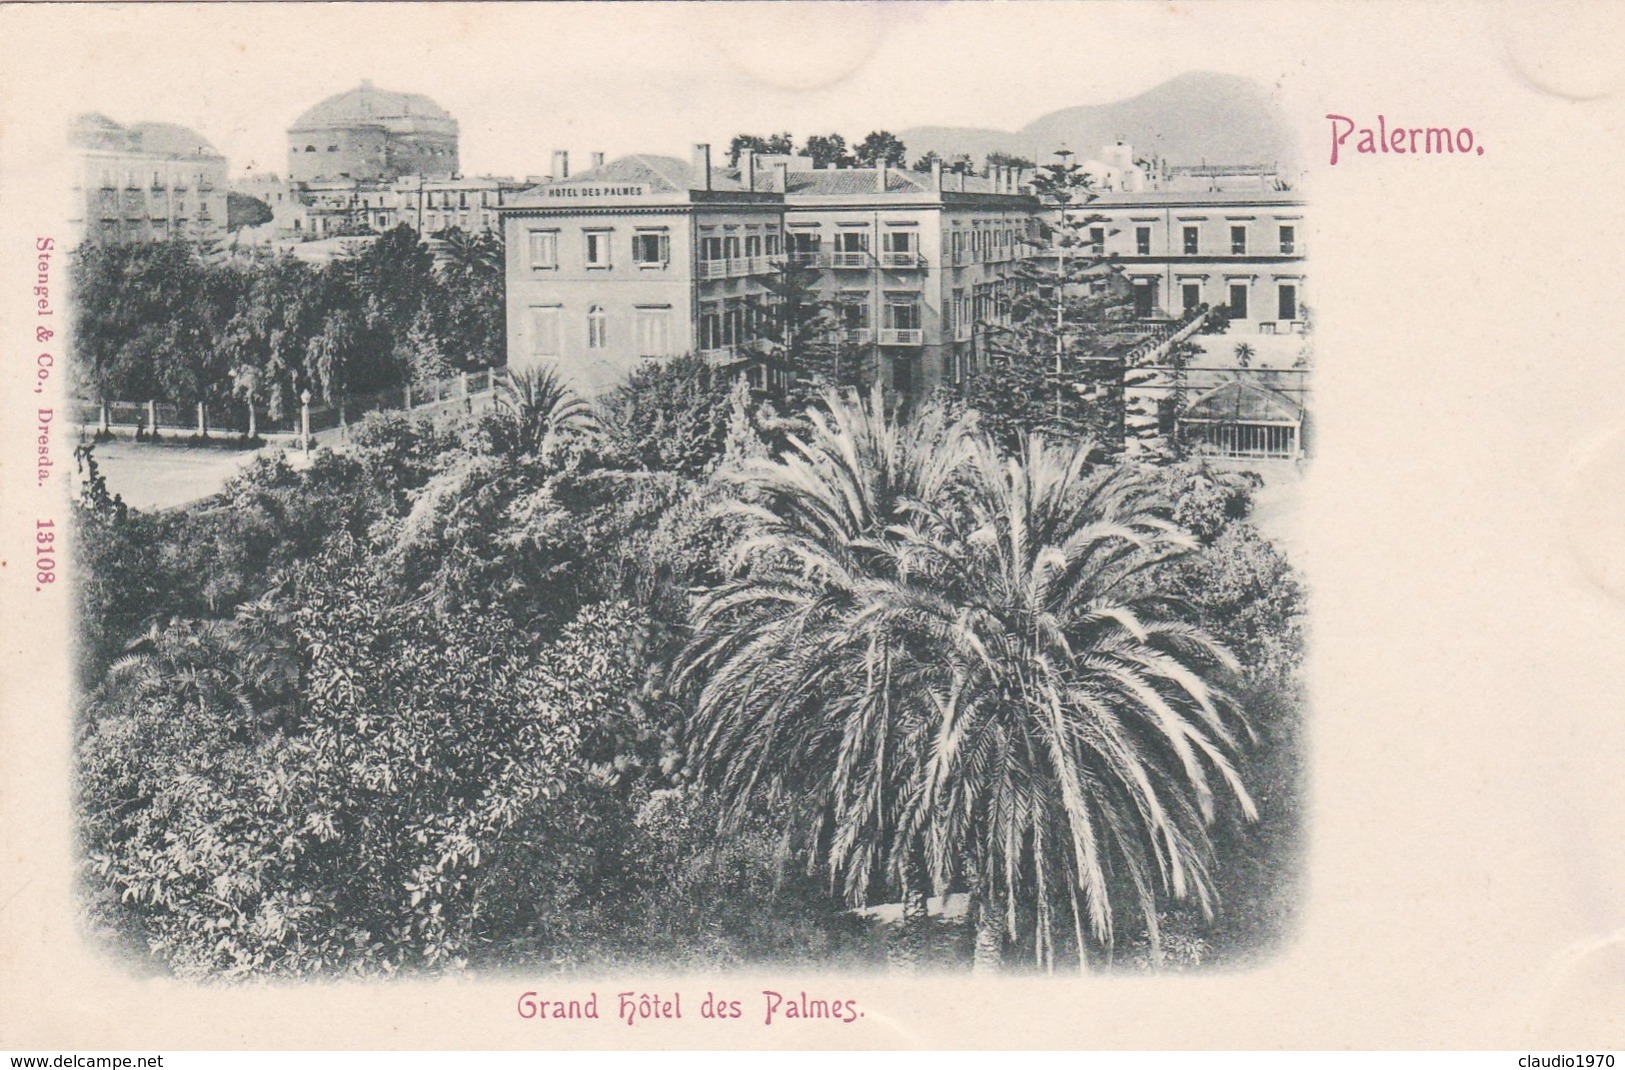 CARTOLINA - PALERMO - GRAND HOTEL DES PALMES - VIAGGIATA PER PISA ( FRANCOBOLLO ASPORTATO) - Palermo